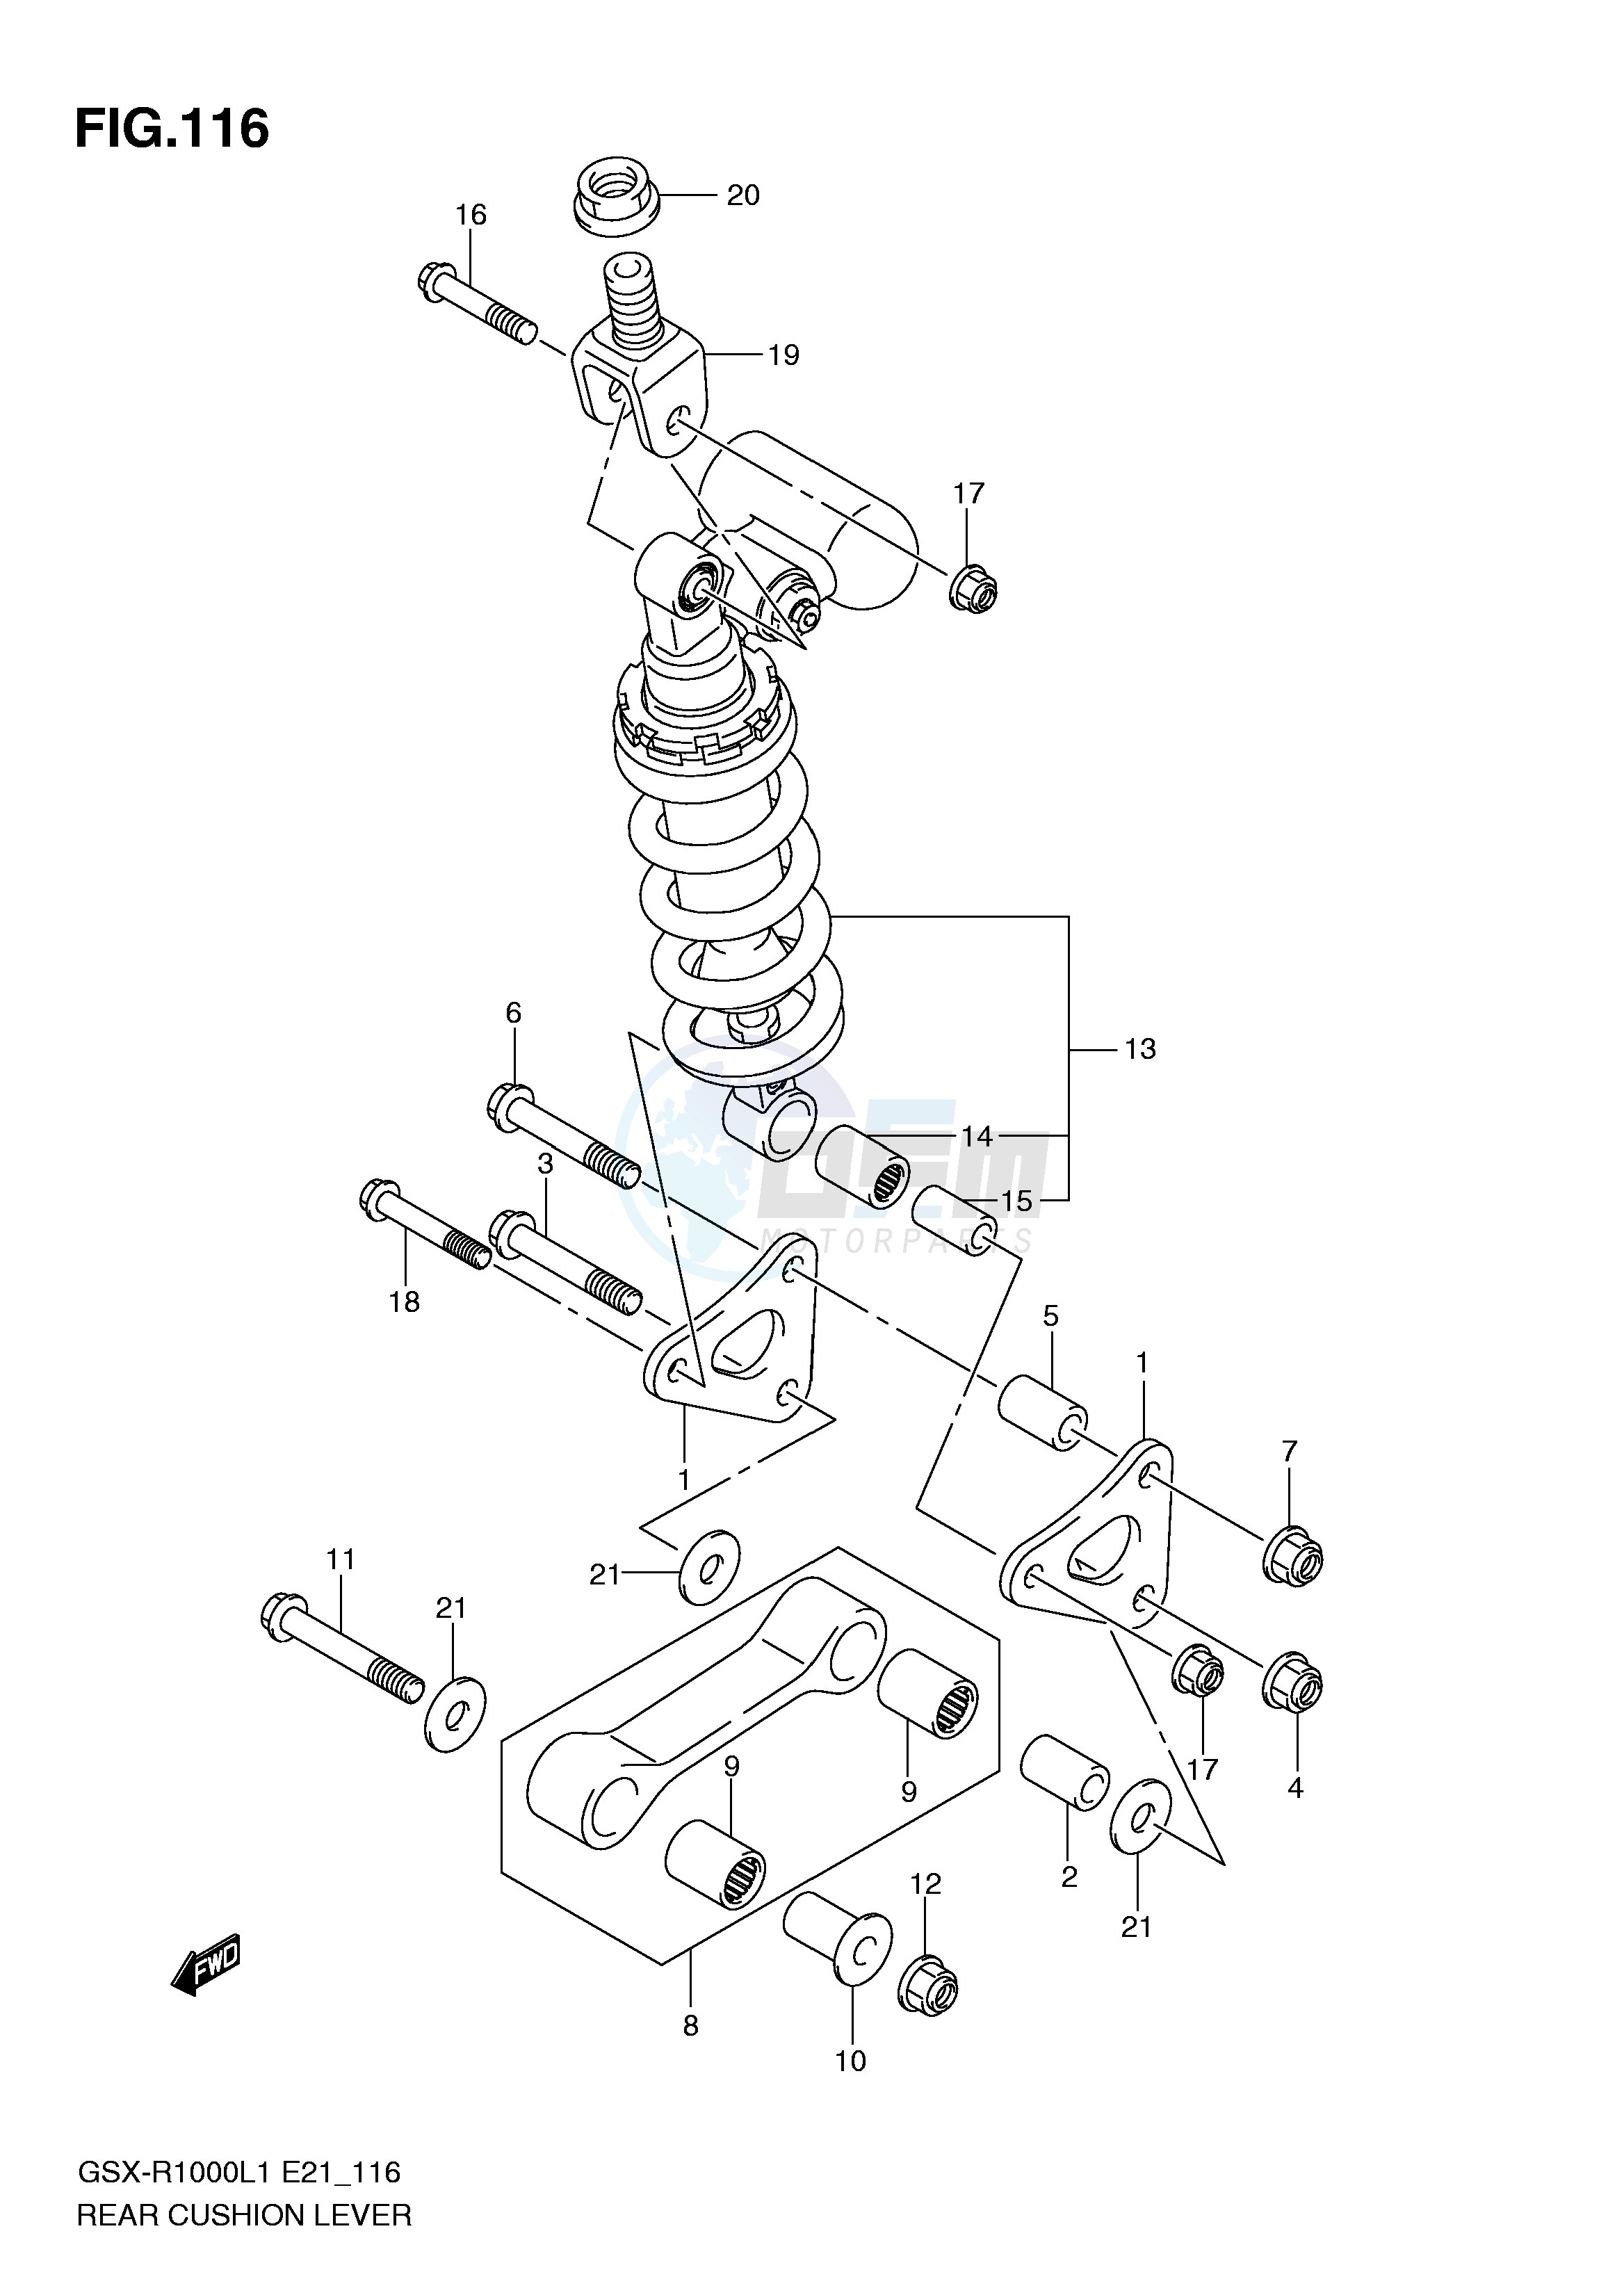 REAR CUSHION LEVER (GSX-R1000L1 E51) blueprint